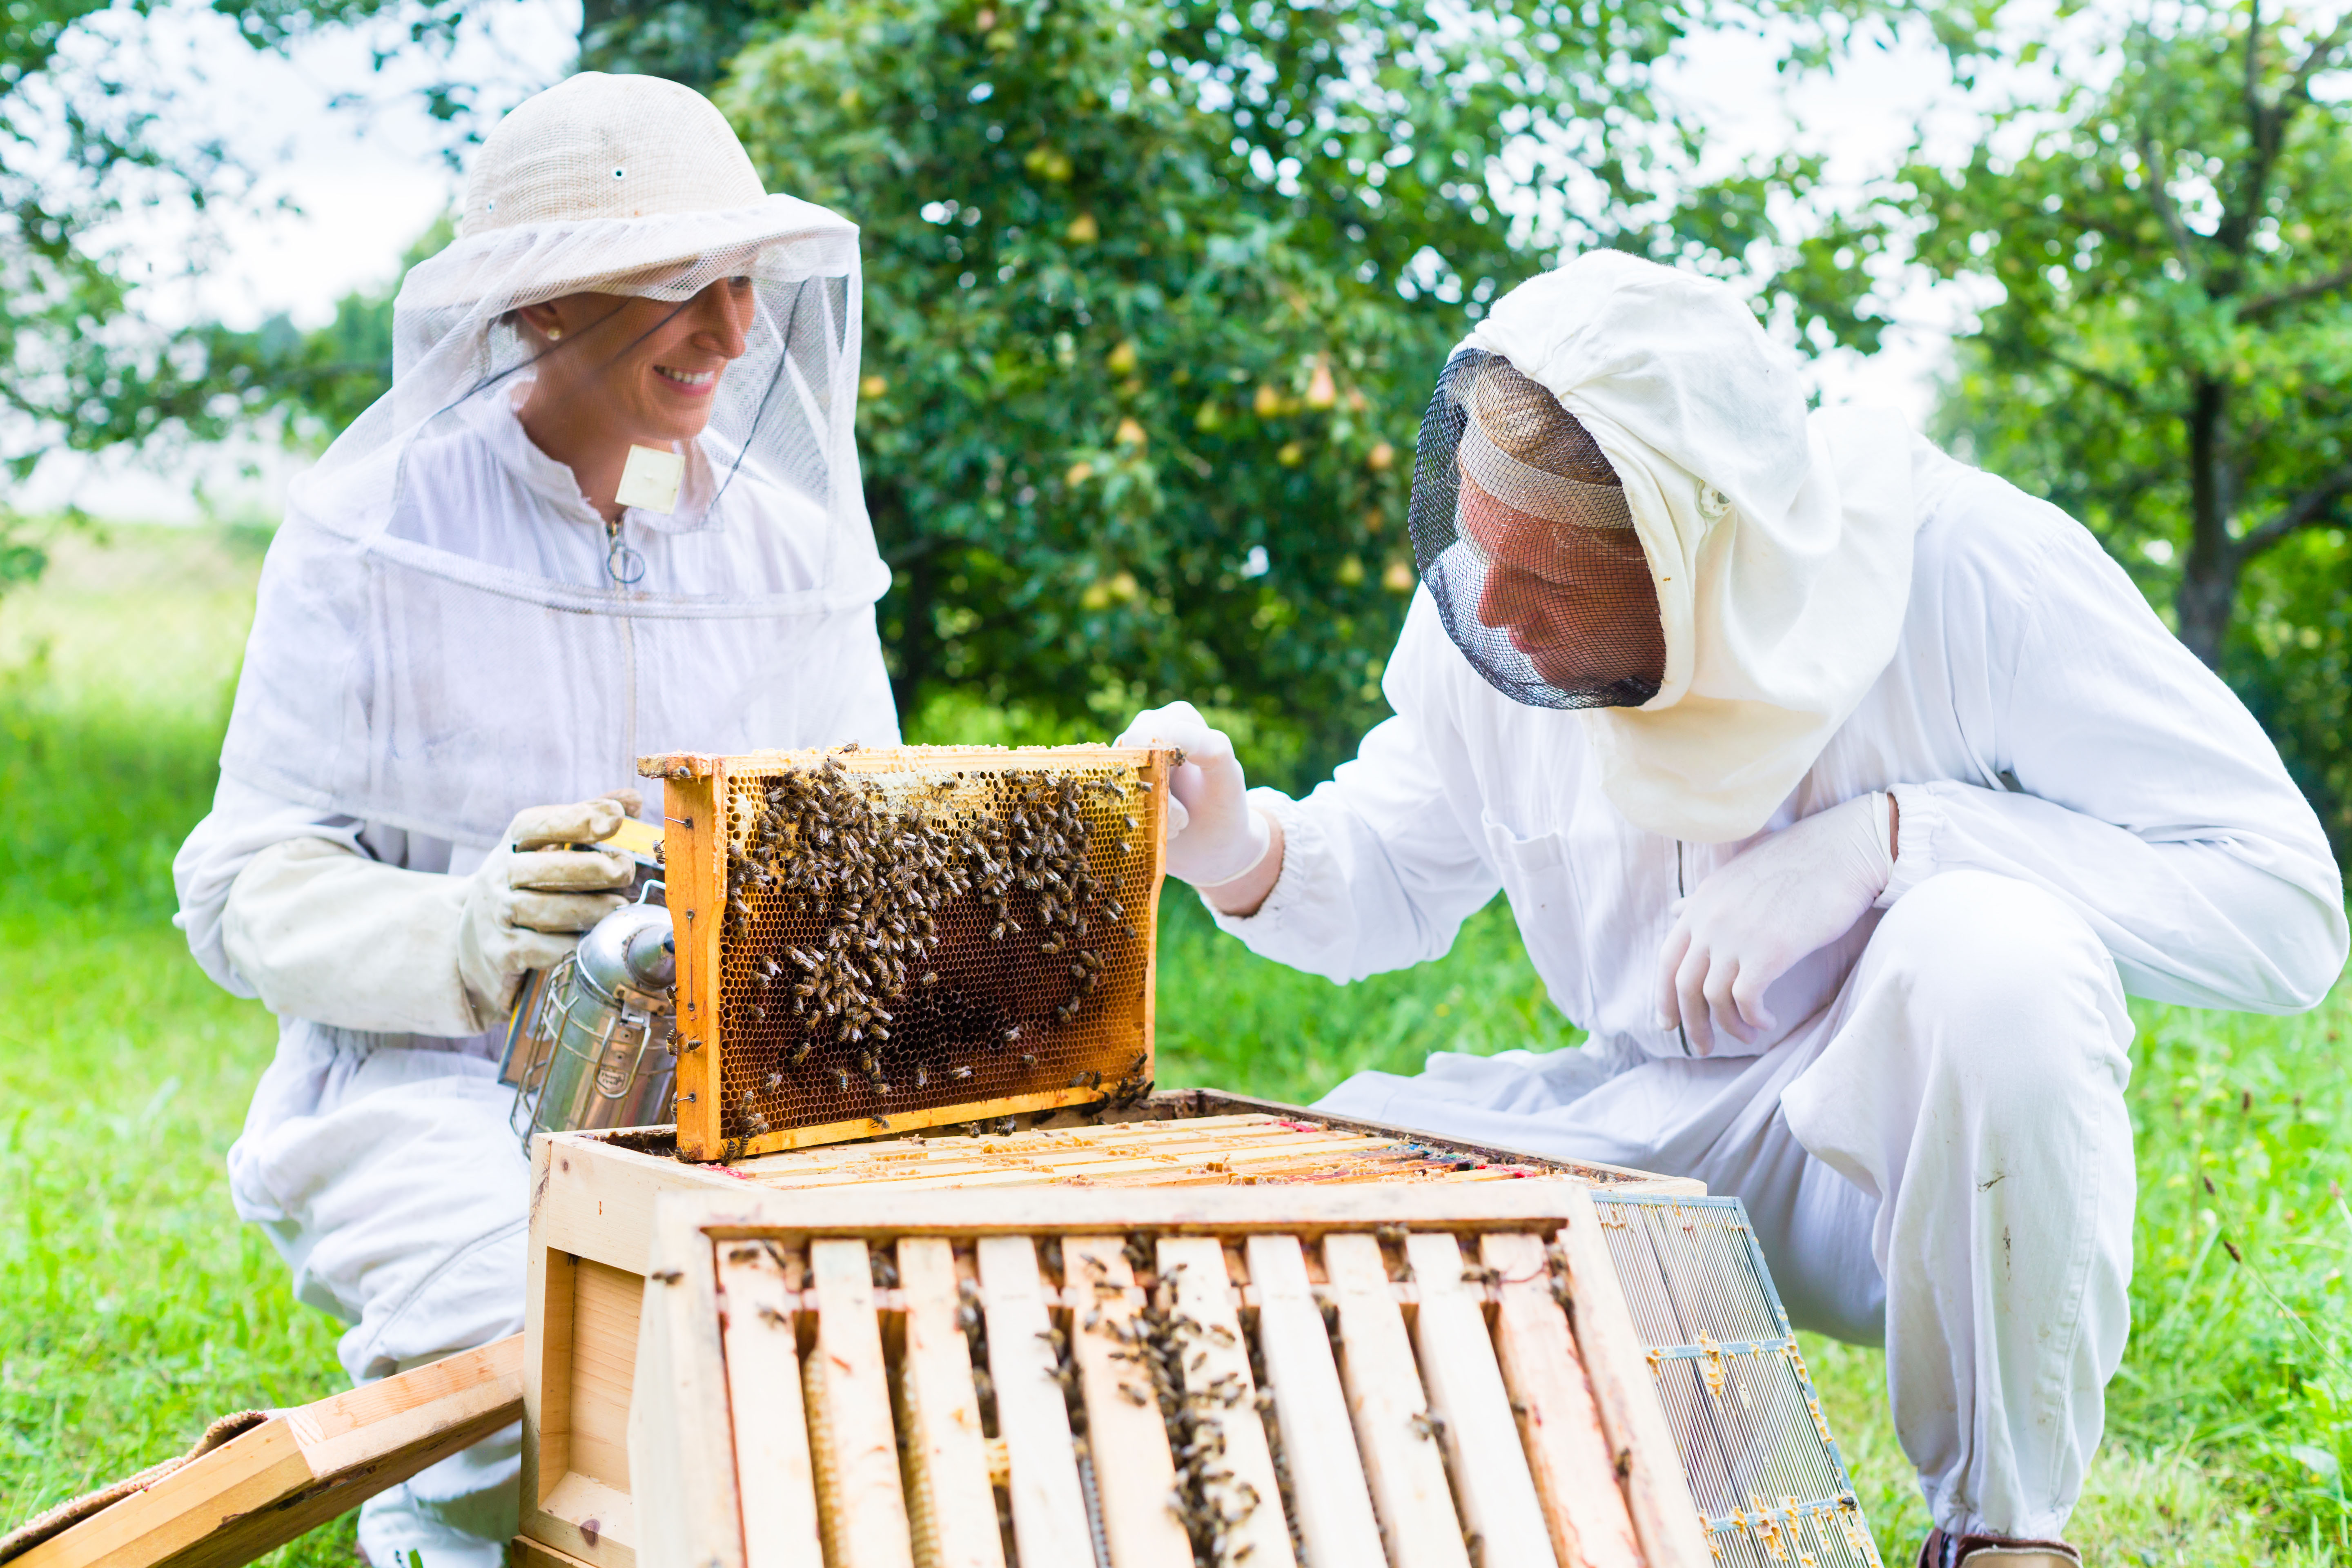 Usando equipamentos e técnicas adequadas, a apicultura pode ser um negócio muito rentável / GB Imagem